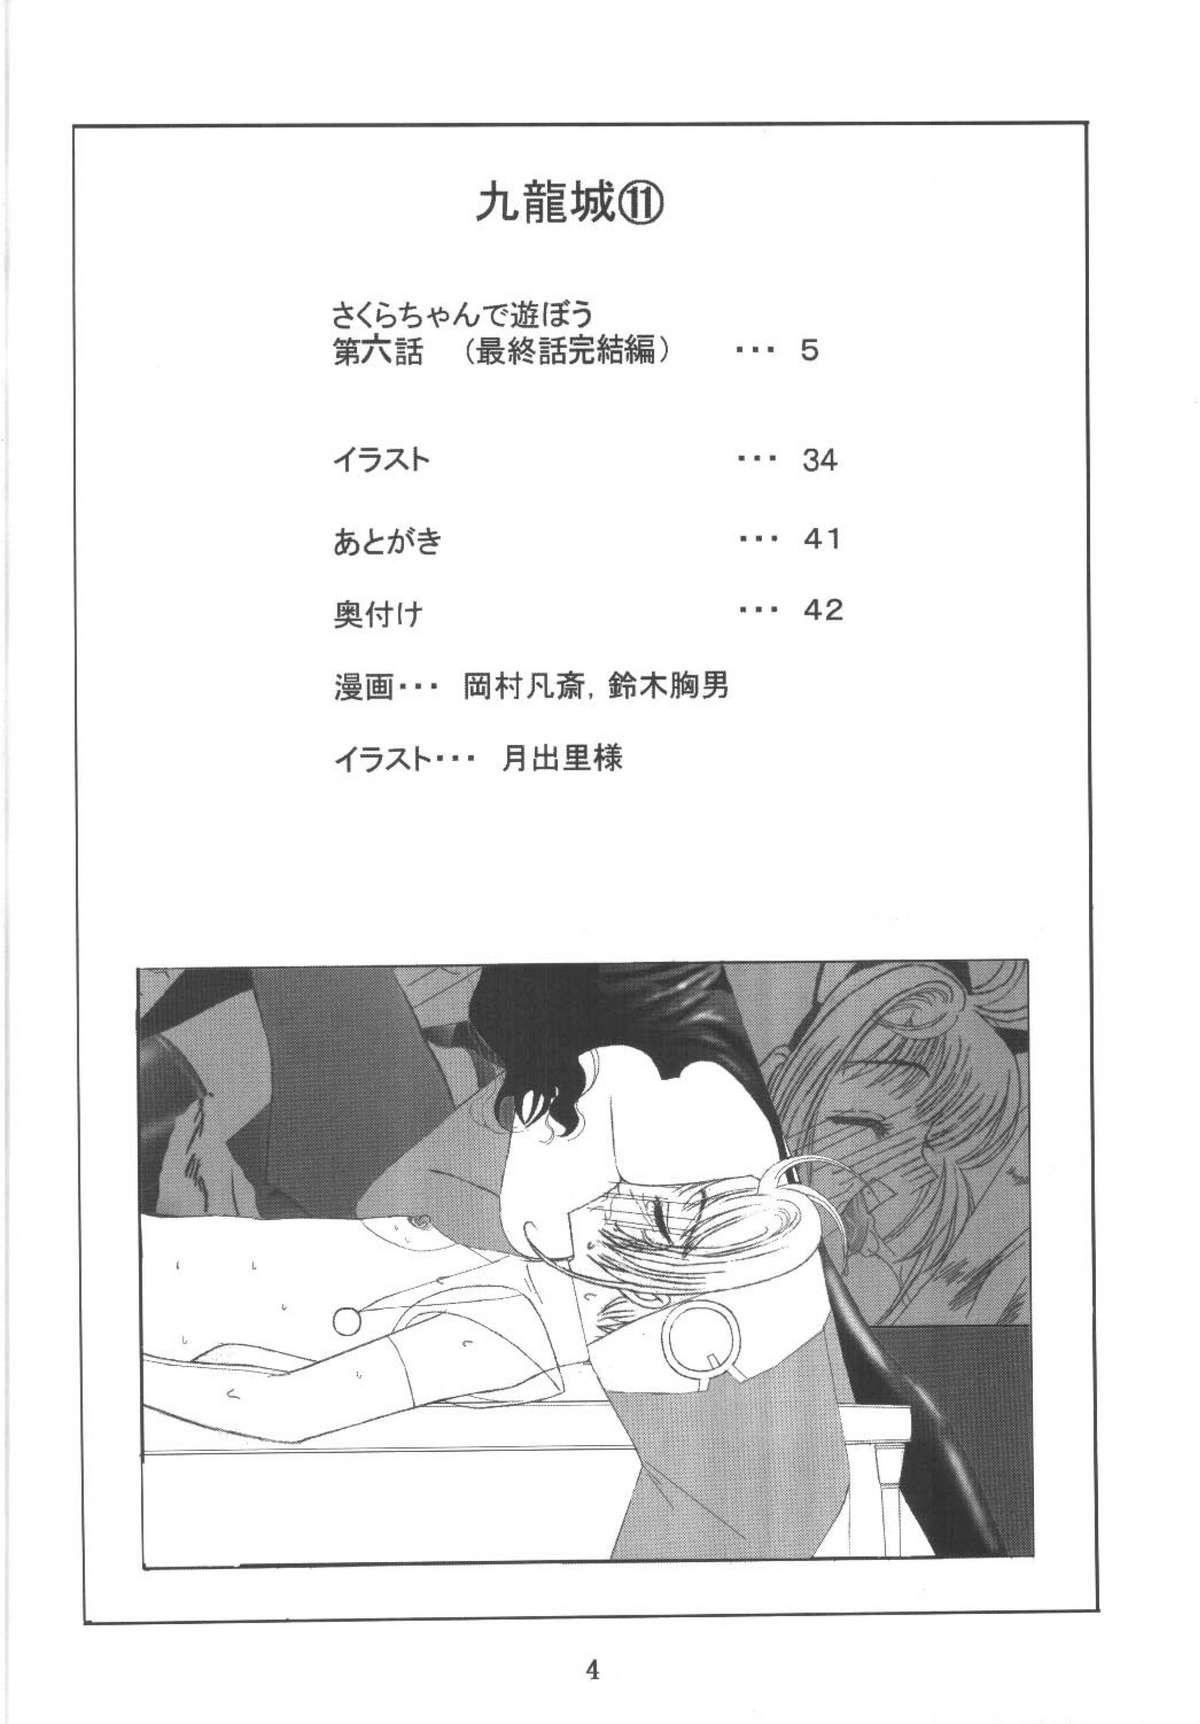 Cruising Kuuronziyou 11 Sakura-chan de Asobou 6 - Cardcaptor sakura Grosso - Page 4